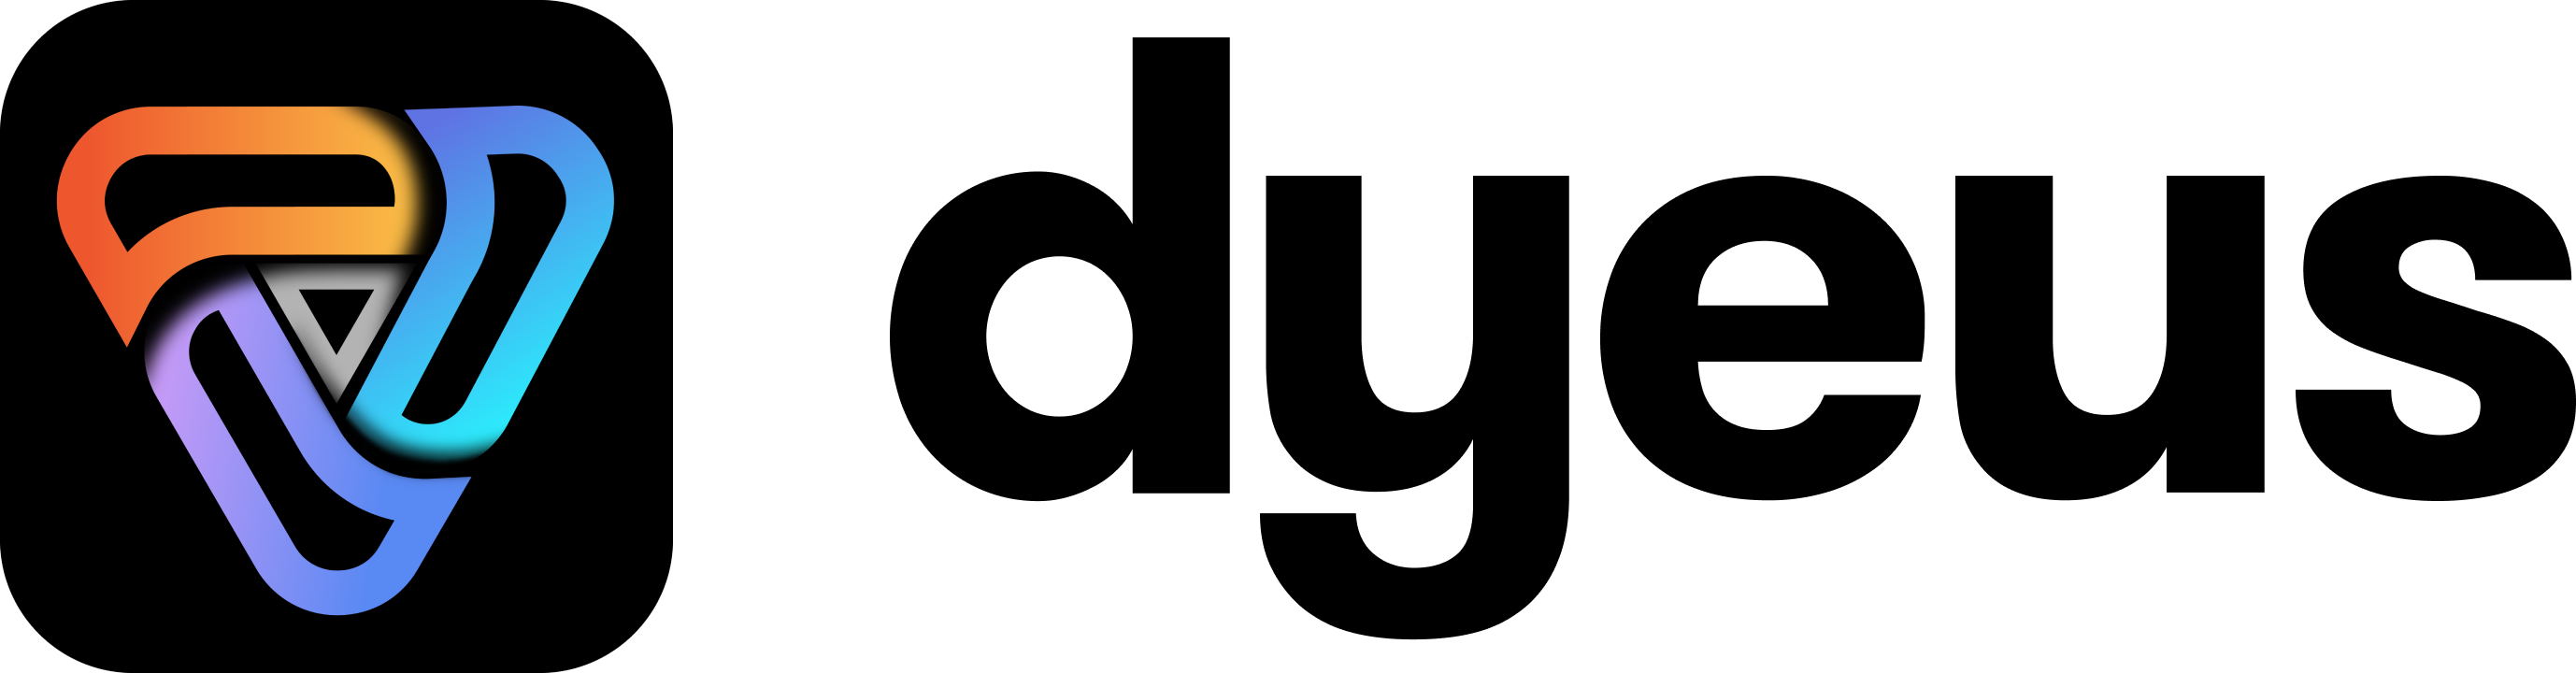 Dyeus logo